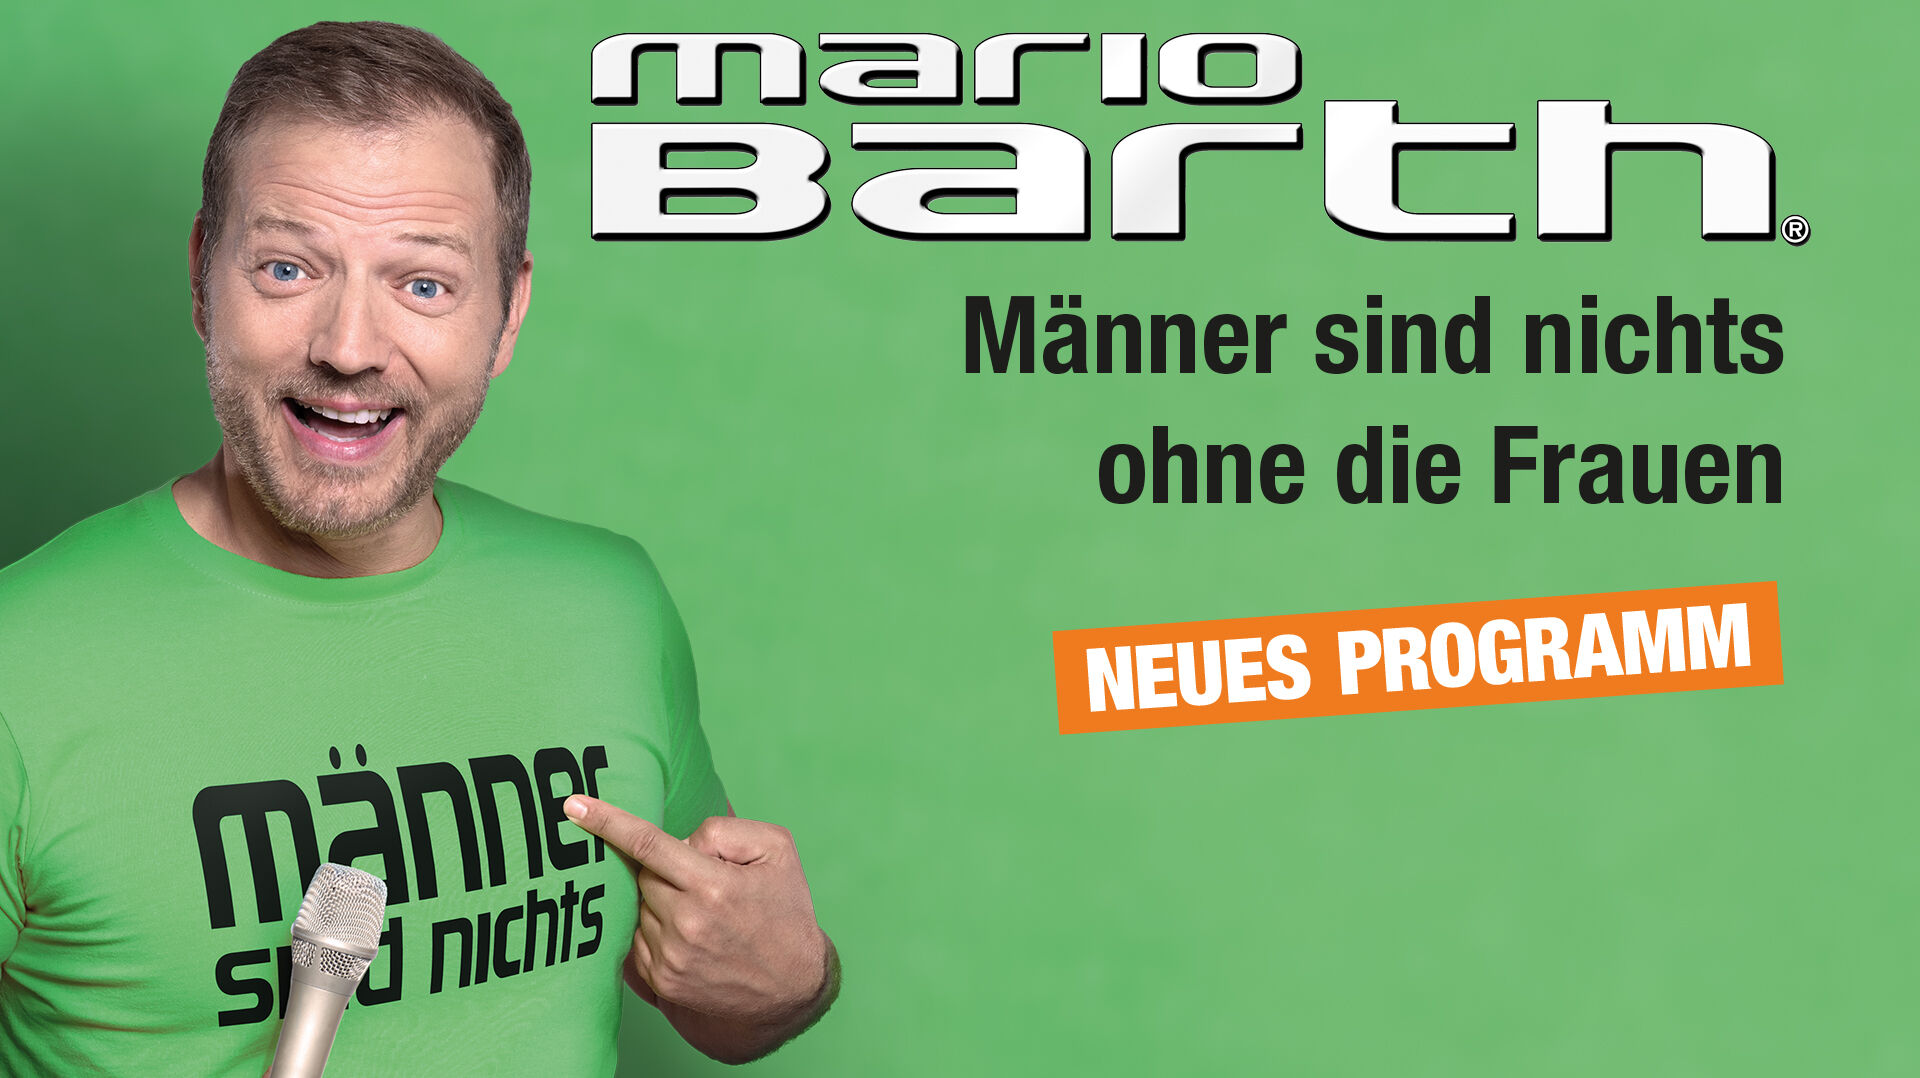 Mario Bath hat ein Mikro in der Hand und zeigt auf sein T-Shirt, auf dem steht "Männer sind nichts".